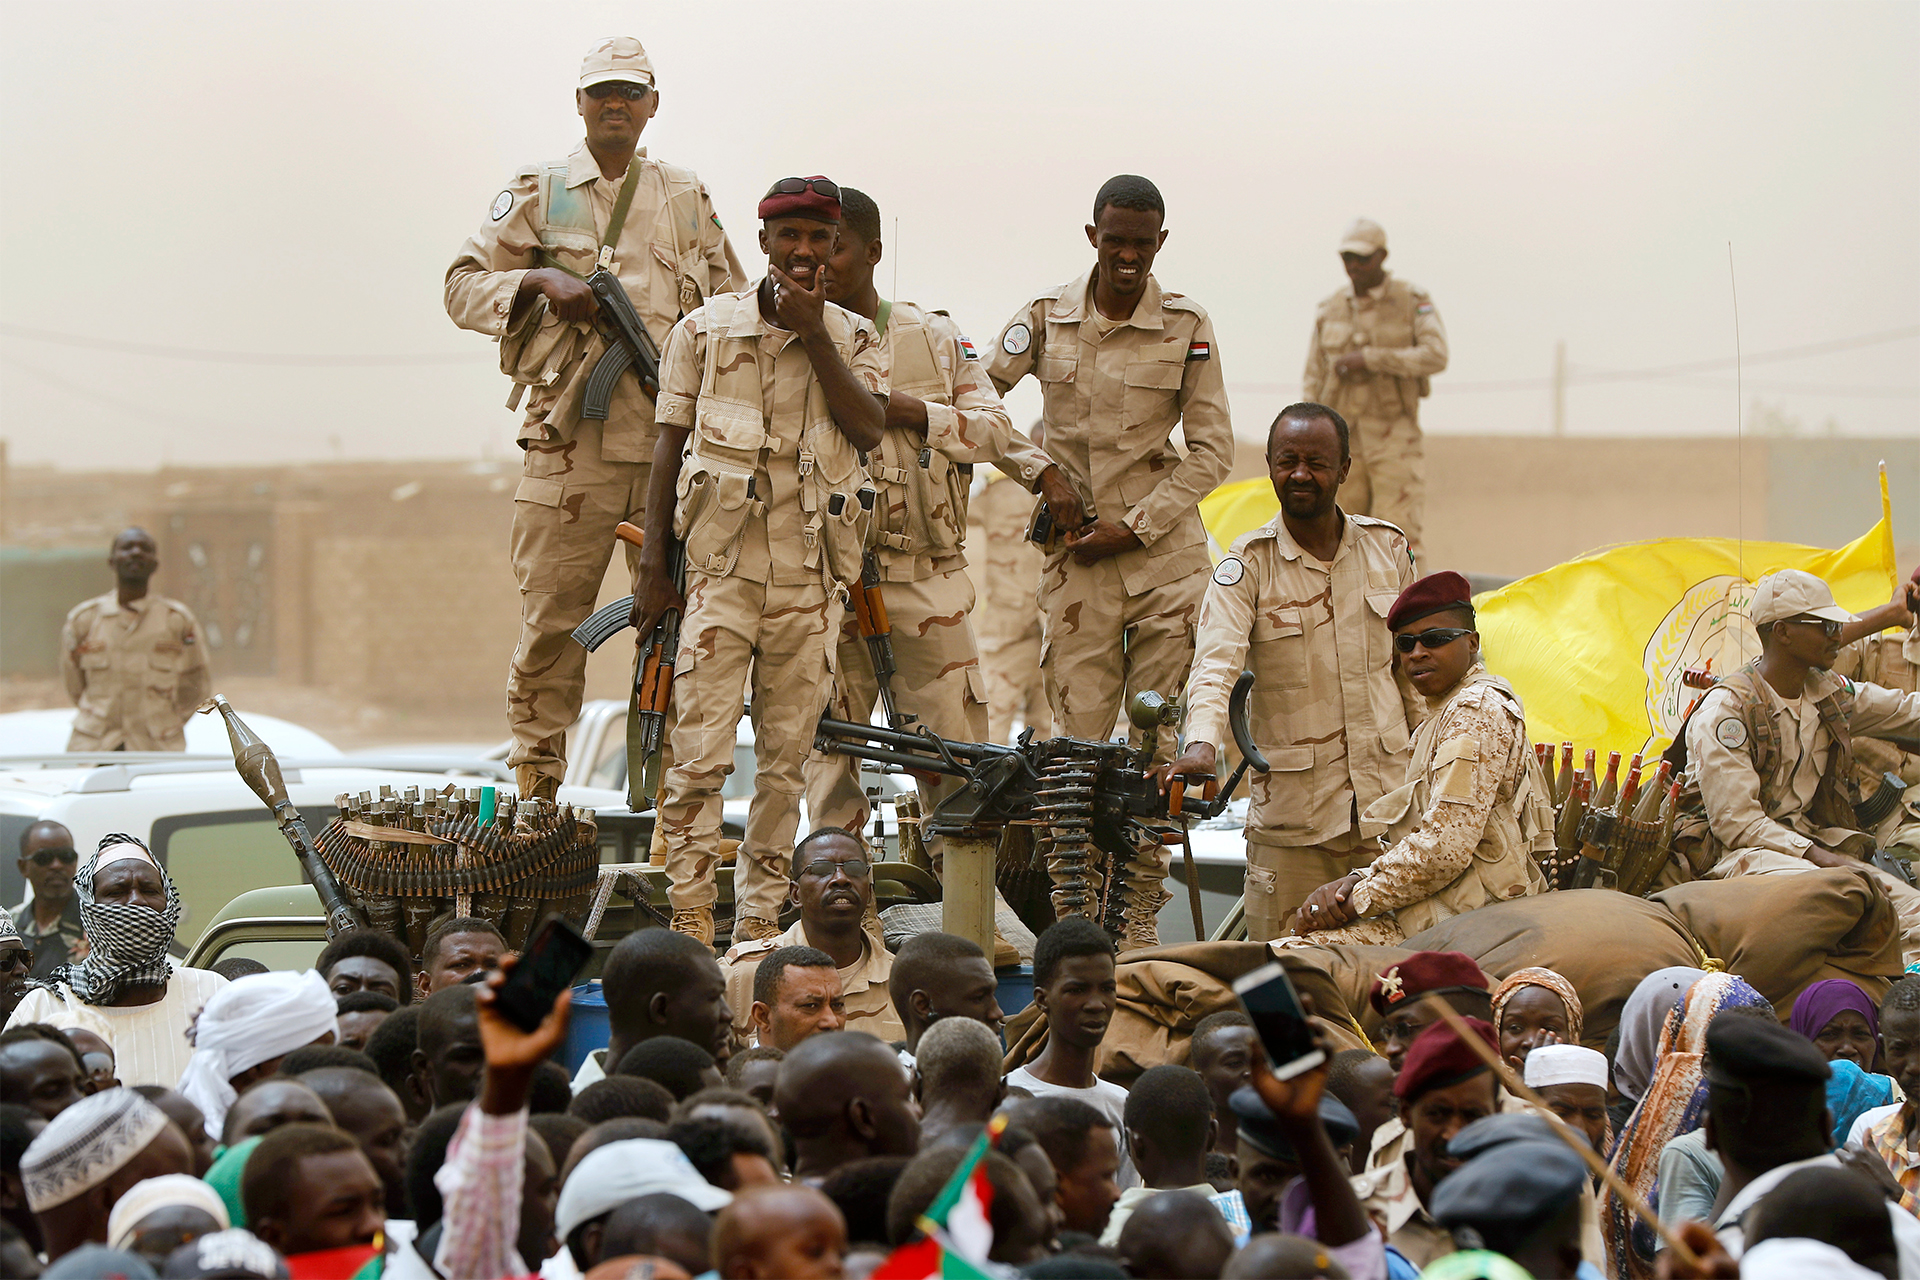 قوات الدعم السريع تعلن سيطرتها على مطار غربي الخرطوم | أخبار – البوكس نيوز